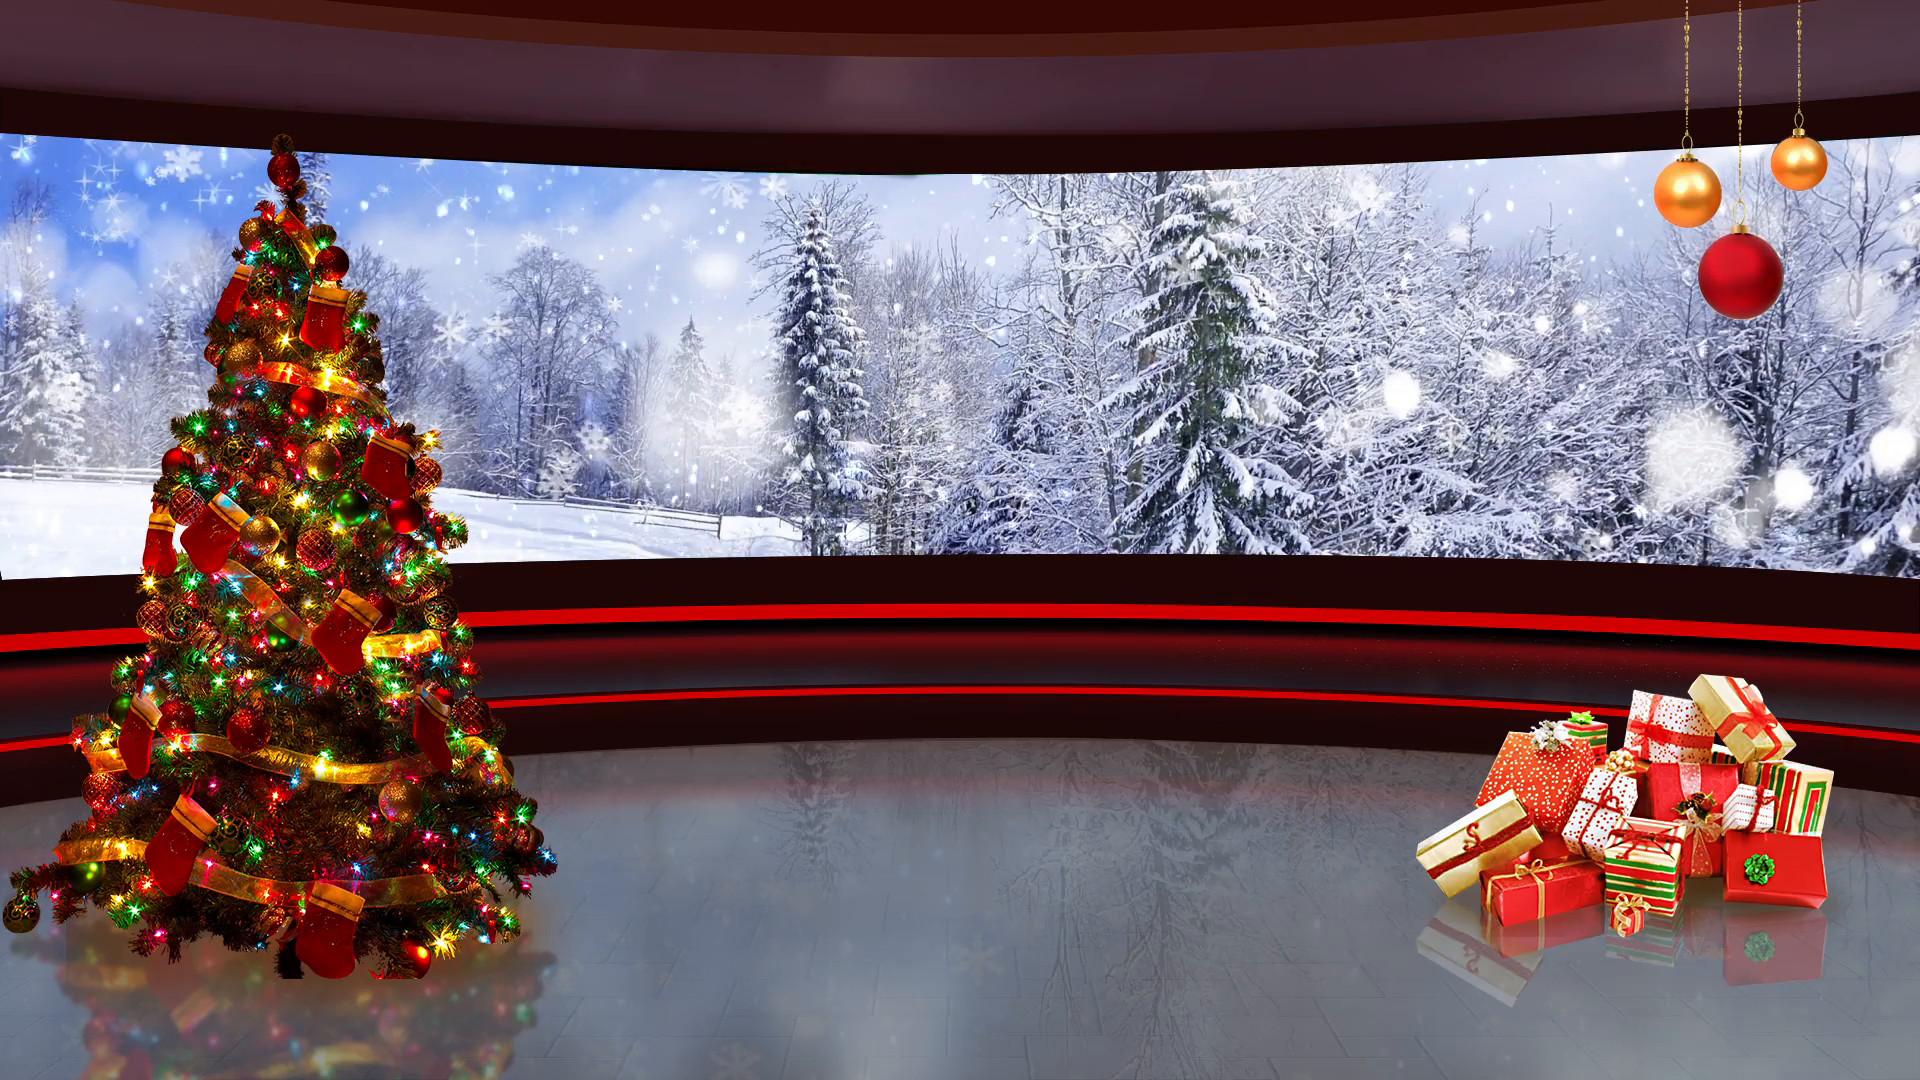 Trong không gian hoàn hảo của lễ hội Noel, hình ảnh là một phần quan trọng trong cảm nhận được màu sắc ấm áp. Hãy tận hưởng phút giây thật thư giãn và tìm thấy những Green screen Christmas wallpapers đẹp lung linh để trang trí màn hình máy tính của bạn nhé!